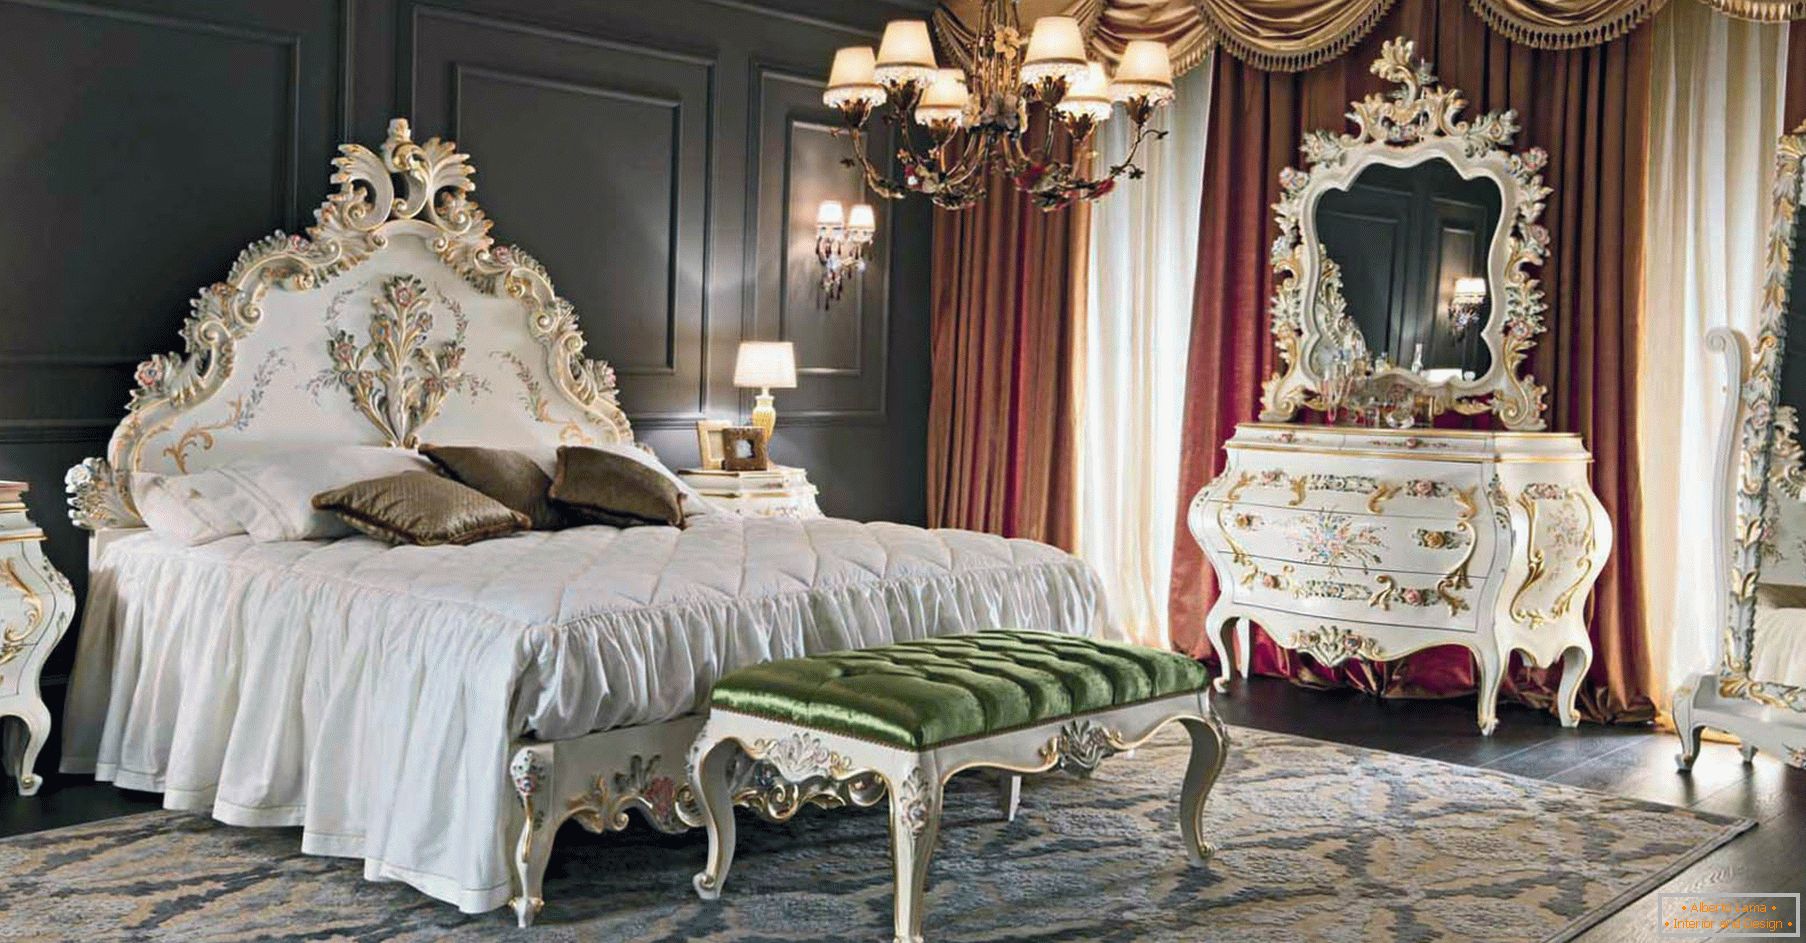 Pro zdobení ložnice byl použit kontrast tmavě hnědé, zlaté, červené a bílé barvy. Nábytek je vybrán podle stylu baroka.